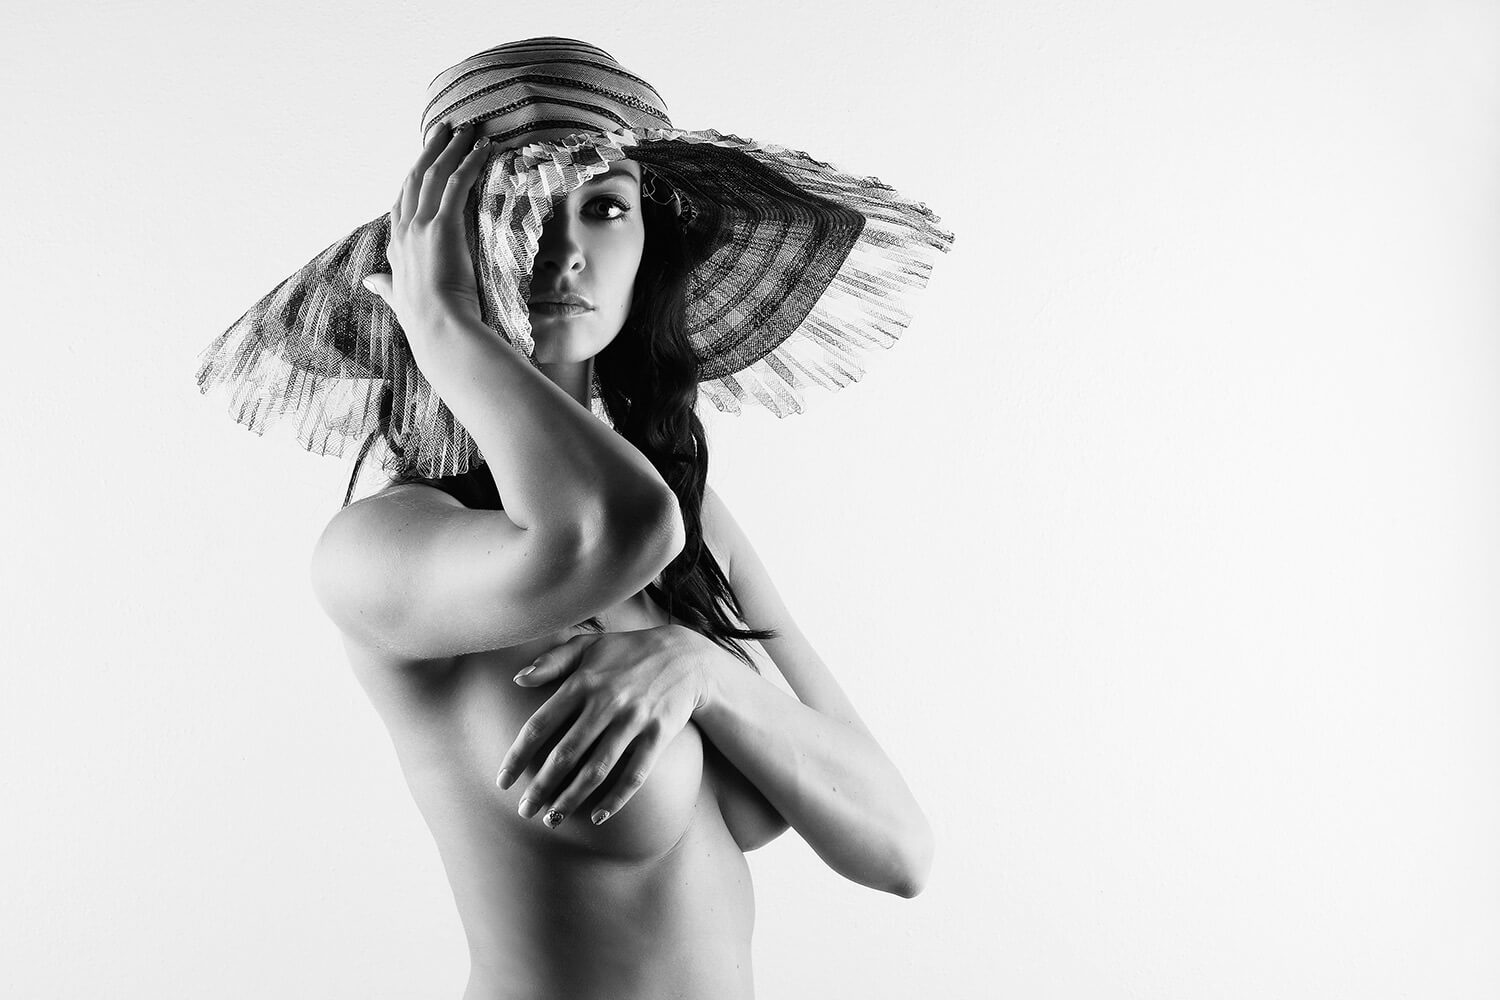 černobílá boudoir fotografie ženy s kloboukem na světlém pozadí